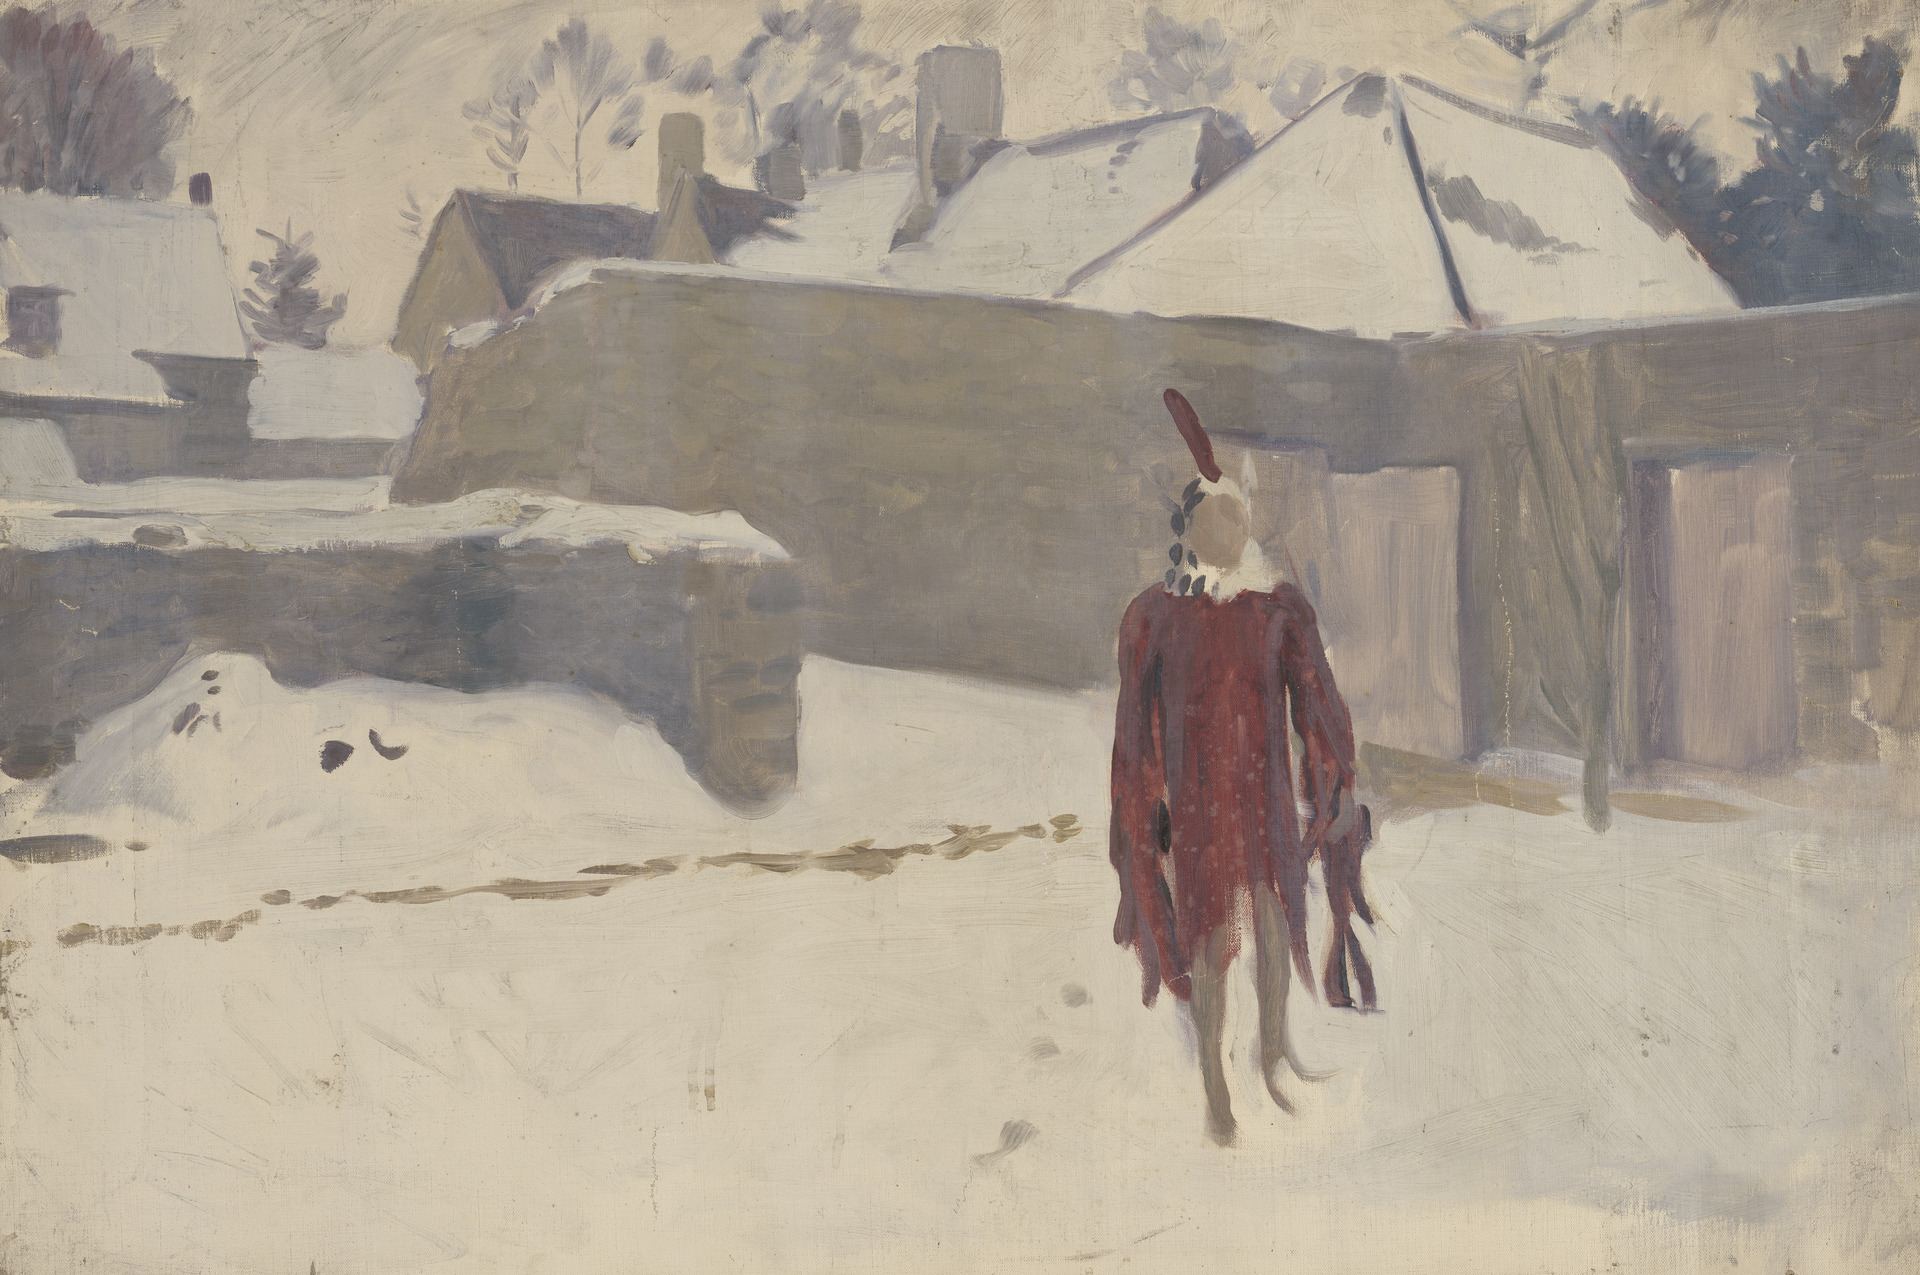 دمية عرض تحت الثلج by John Singer Sargent - حوالي 1891-93 م - 63.5 سم في 76.2 سم 